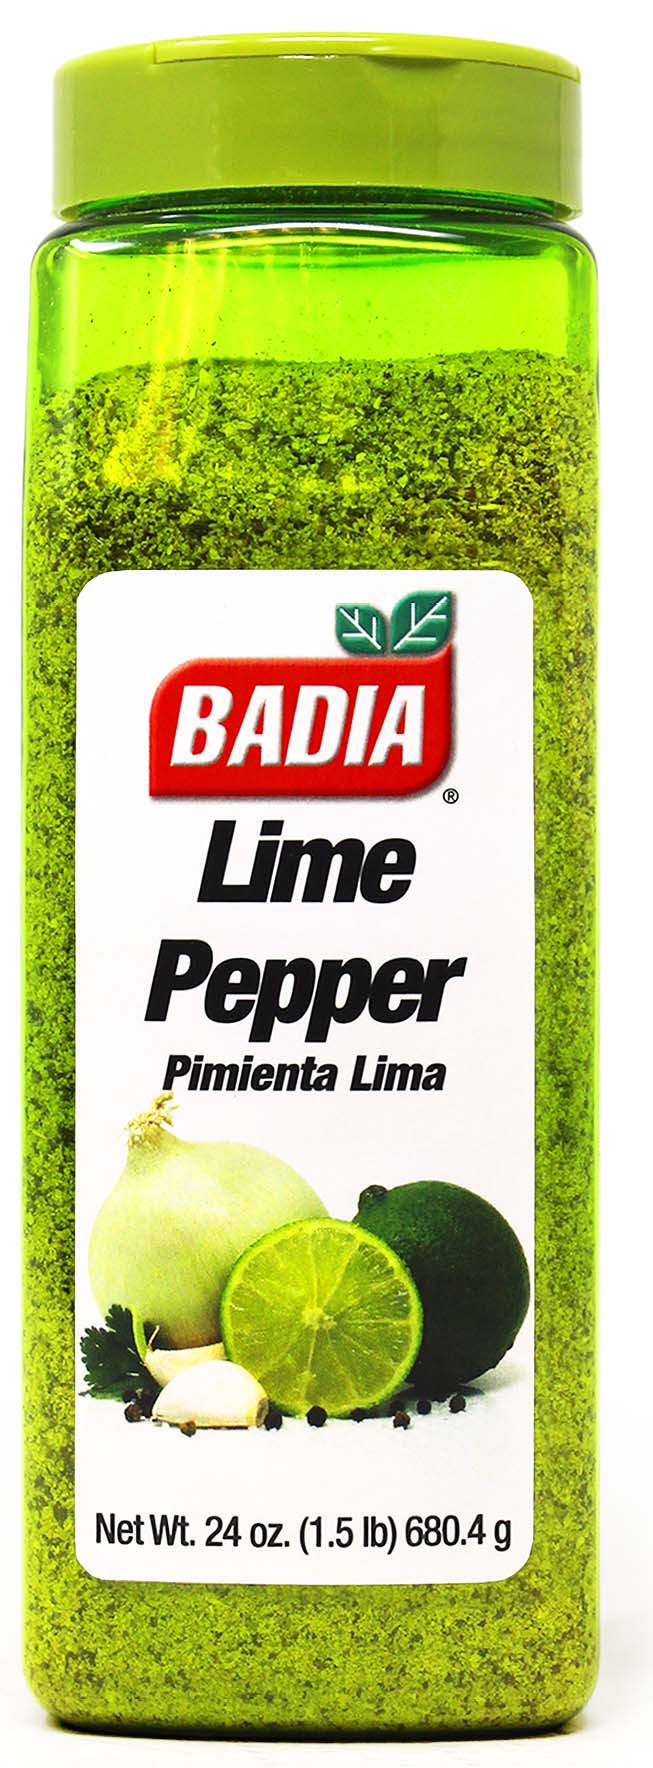 Badia Orange Pepper 